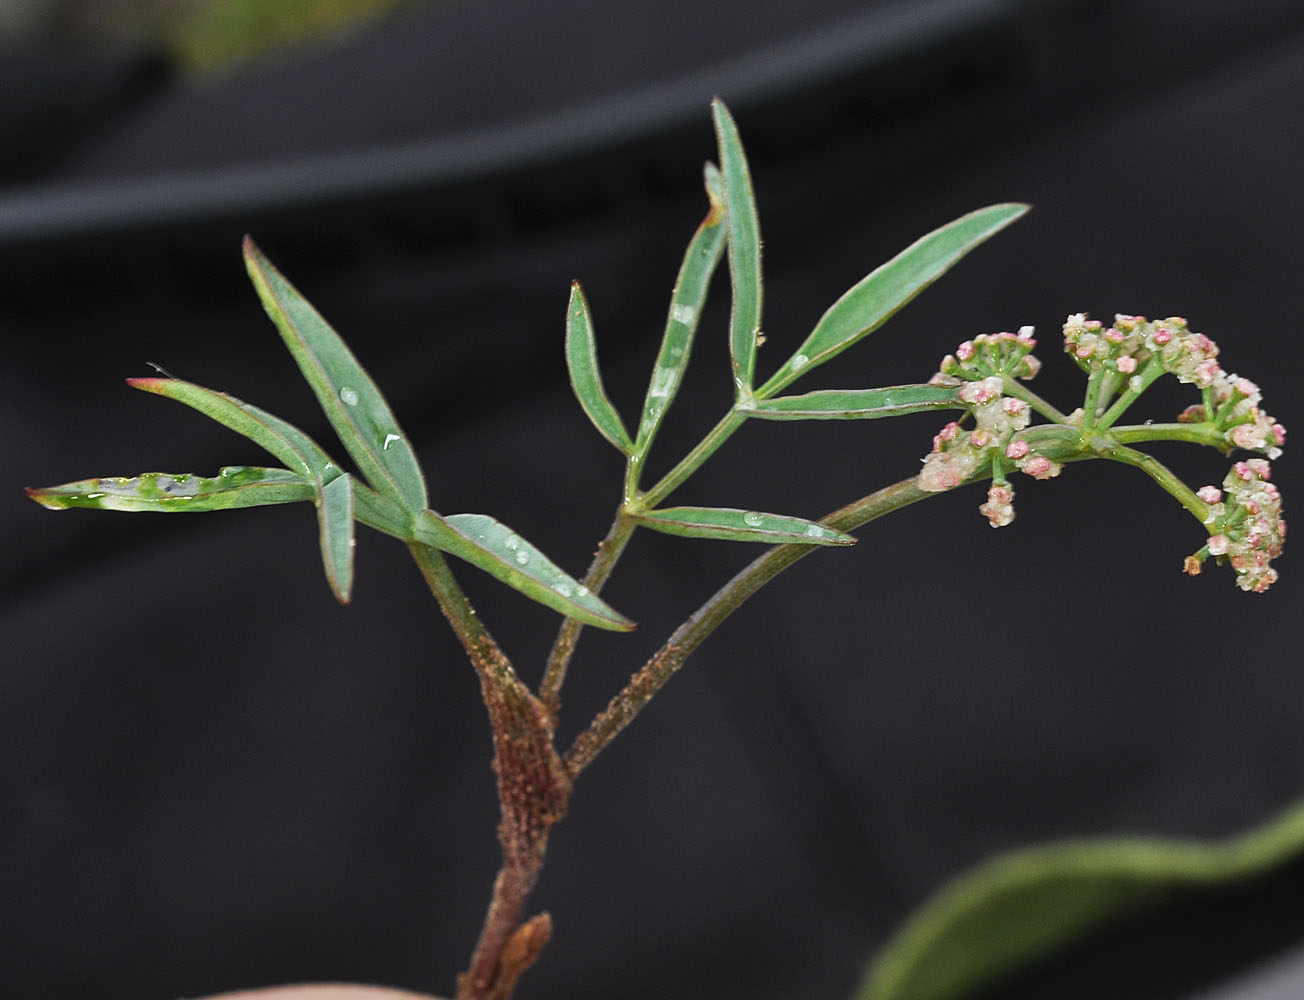 Flora of Eastern Washington Image: Lomatium lithosolamans